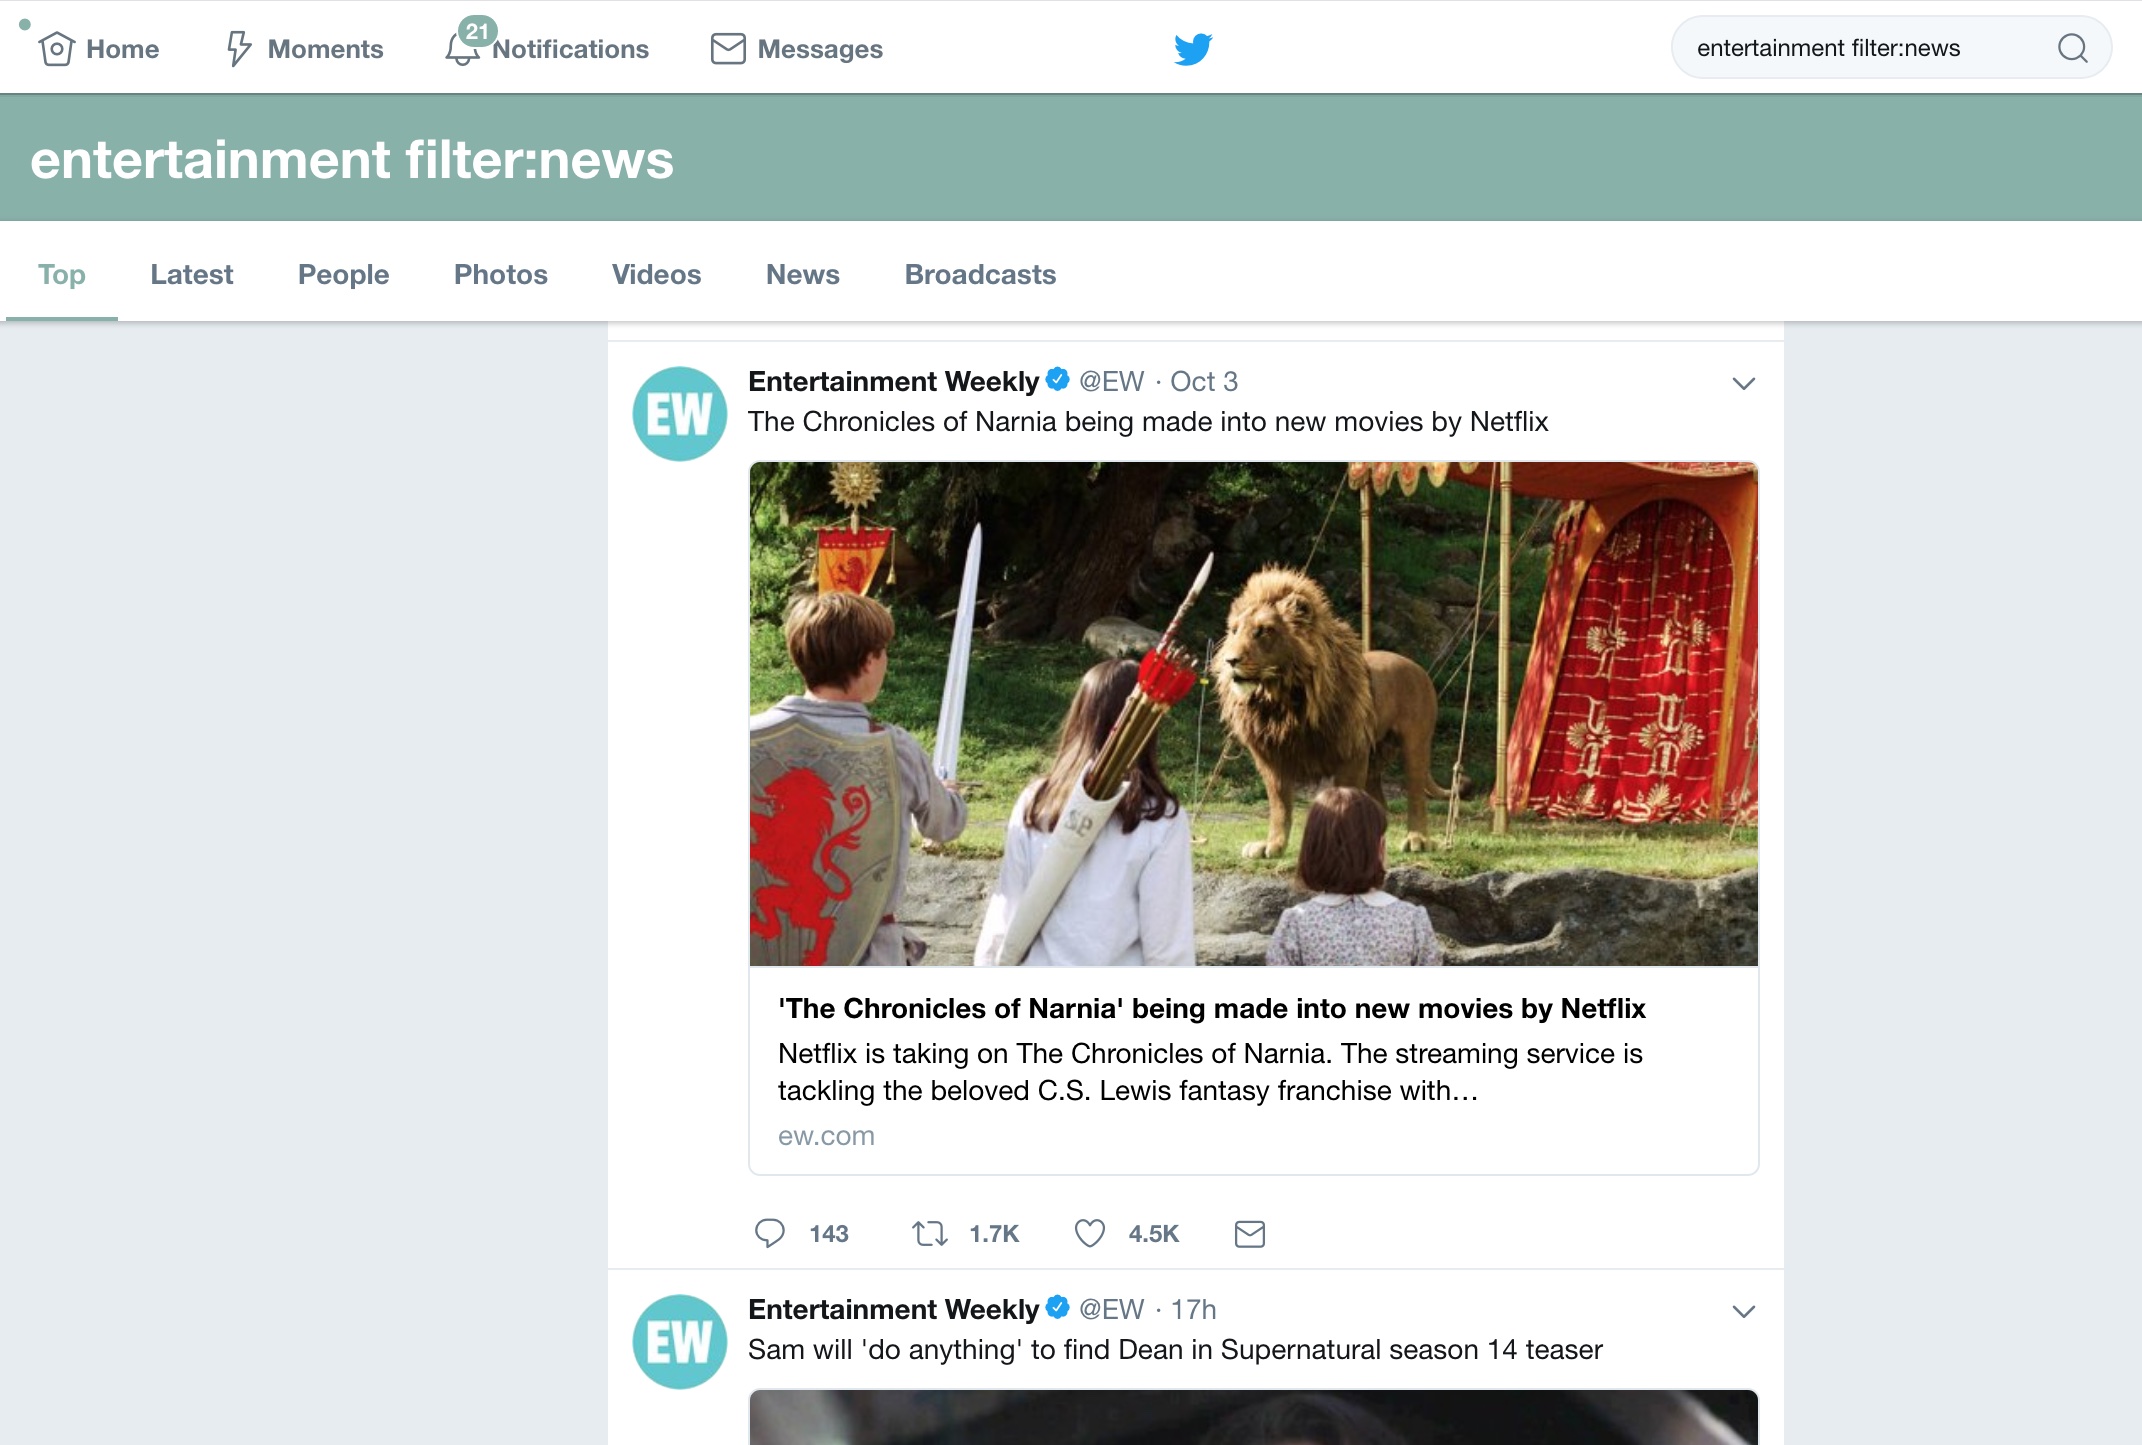 Twitter Entertainment News Filter